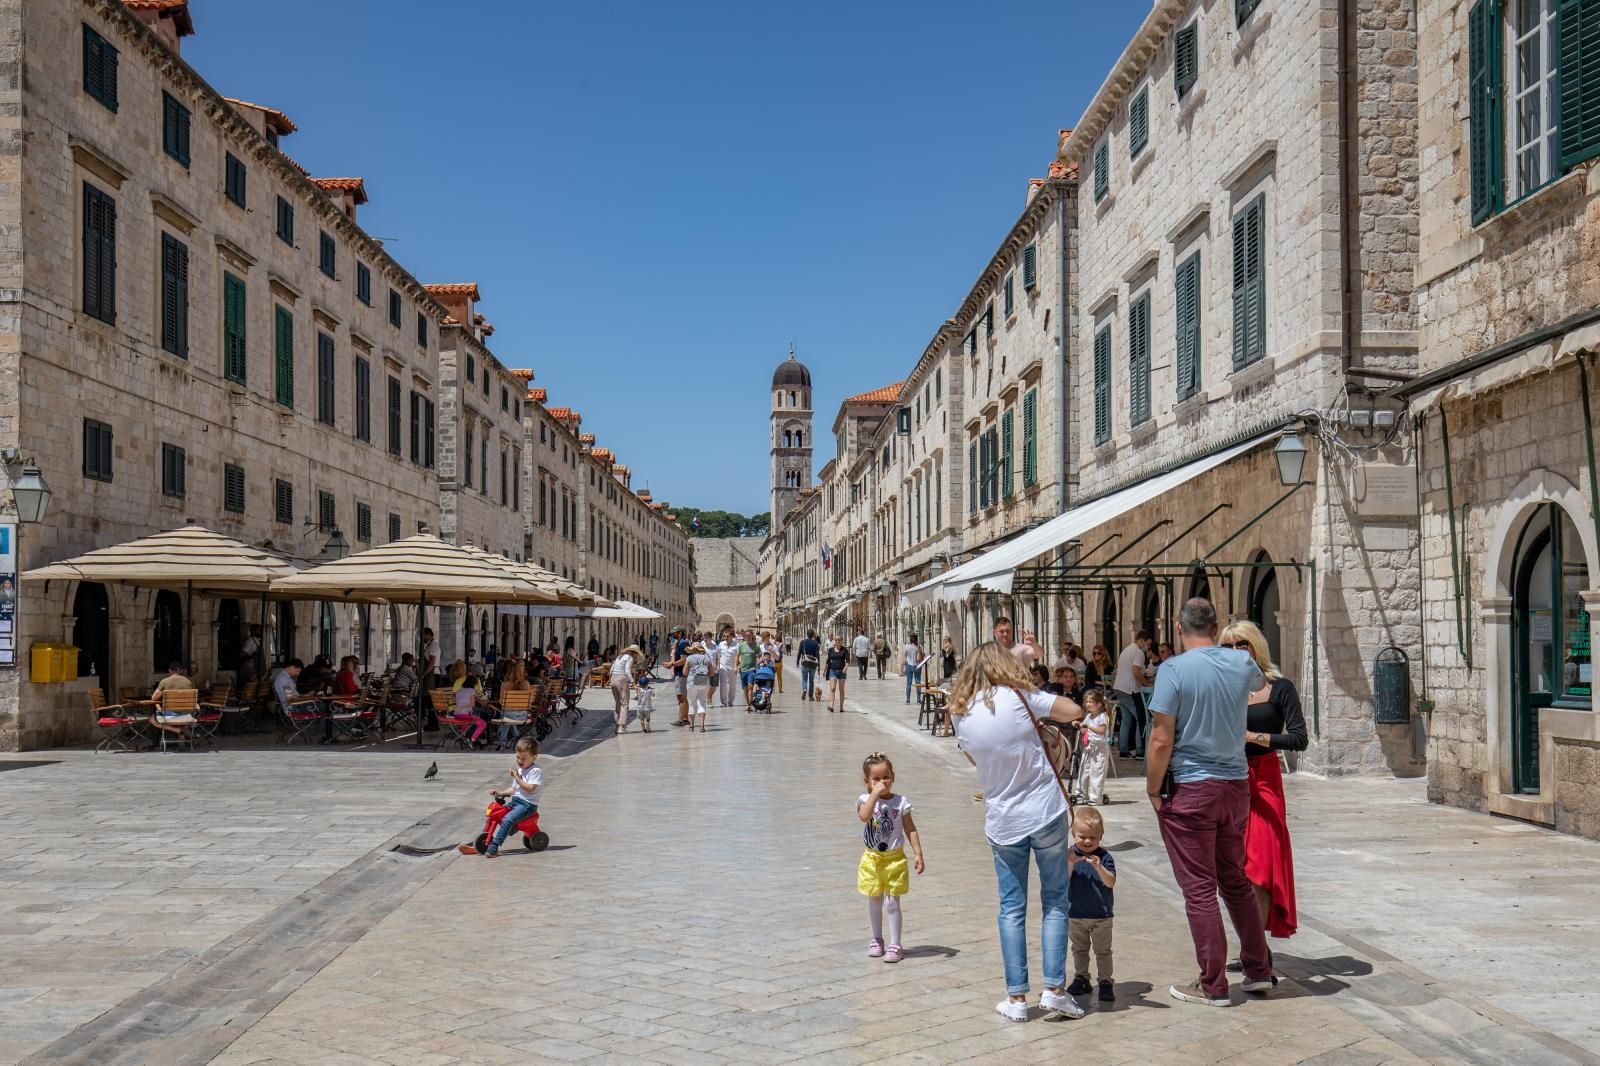 23.06.2021., Stara gradska jezgra, Dubrovnik - Gradski kadrovi. Svakim danom sve vise gostiju u gradu.
Photo: Grgo Jelavic/PIXSELL